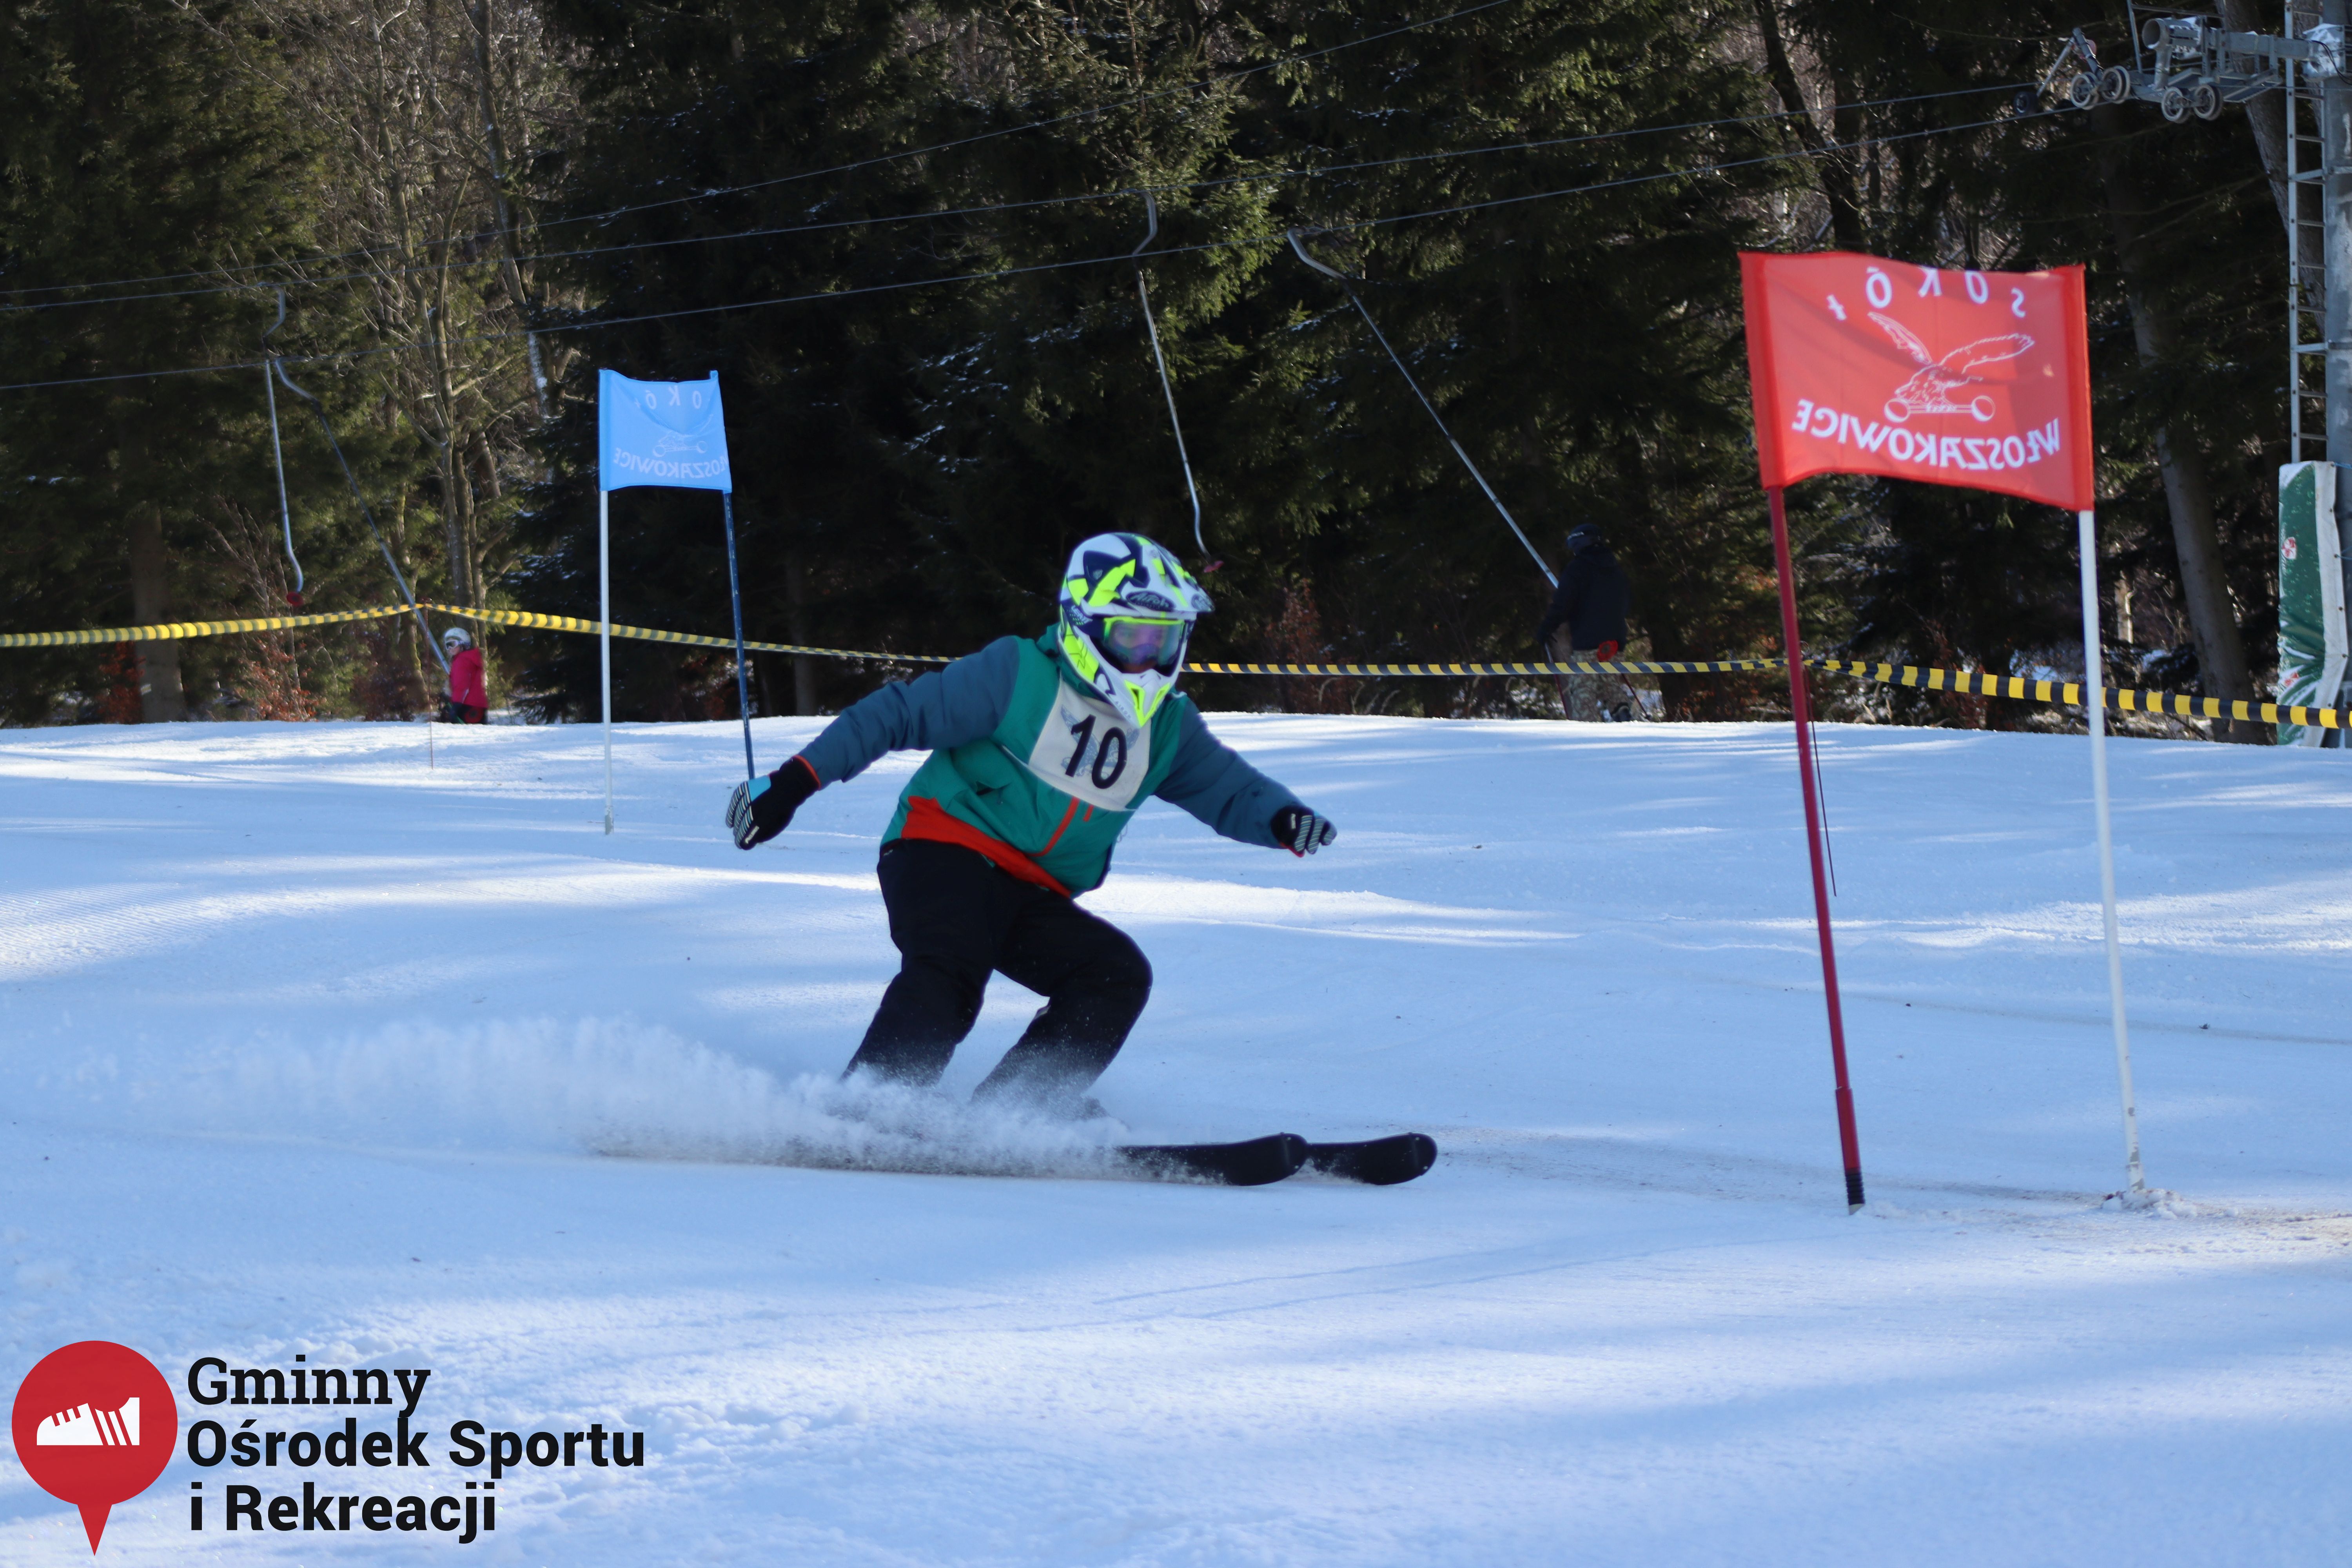 2022.02.12 - 18. Mistrzostwa Gminy Woszakowice w narciarstwie051.jpg - 1,85 MB